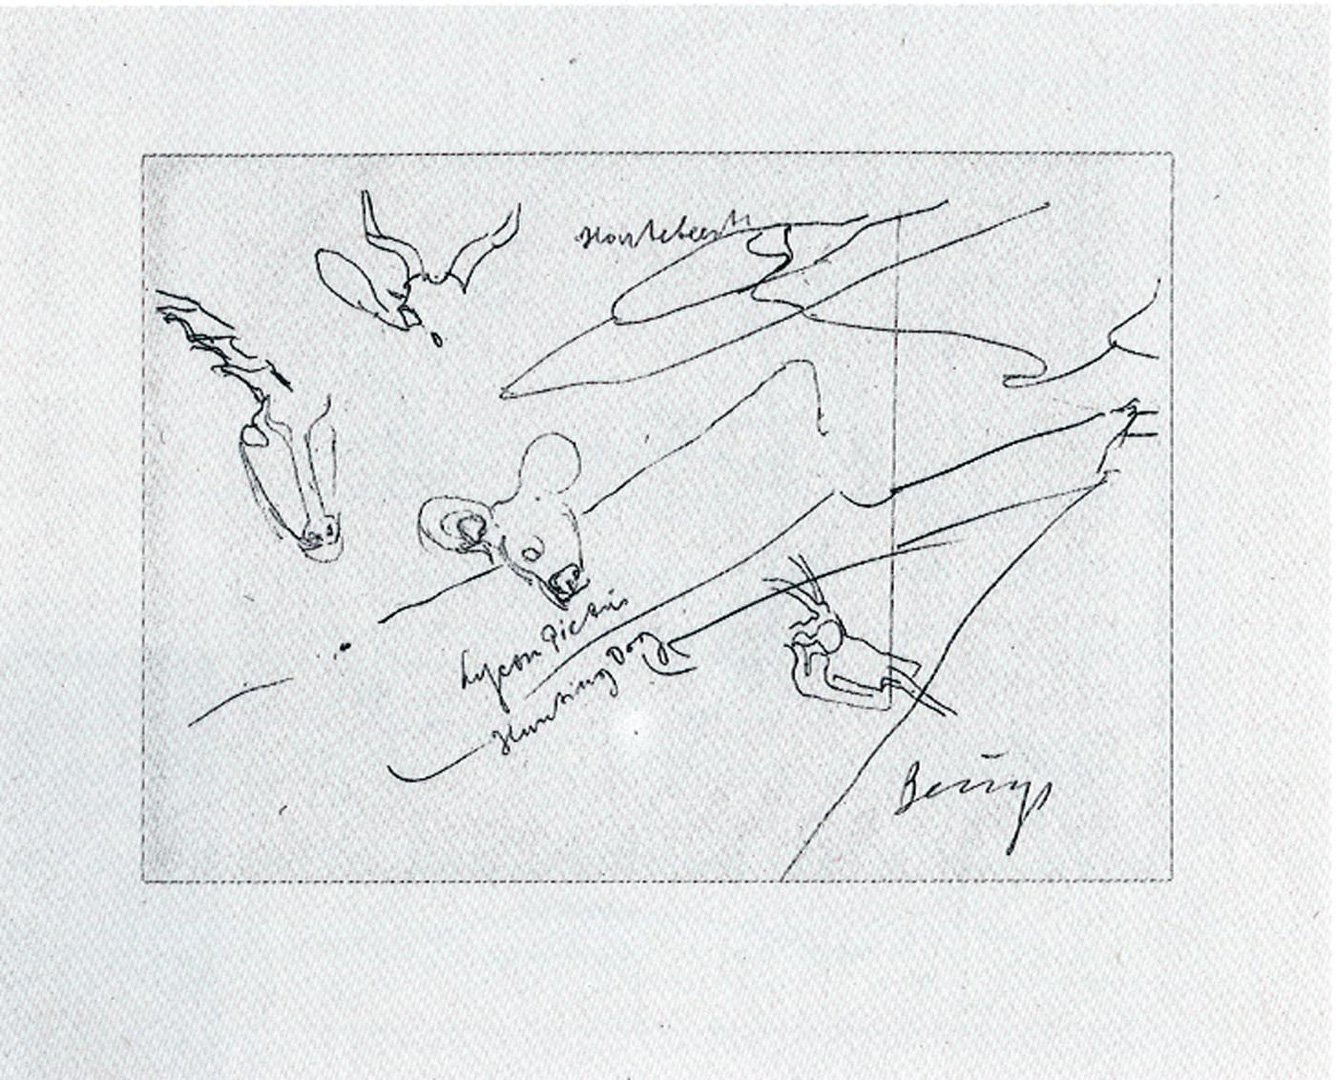 Joseph Beuys - Zeichnungen zu Codices Madrid von Leonardo da Vinci, 1975, granolithograph